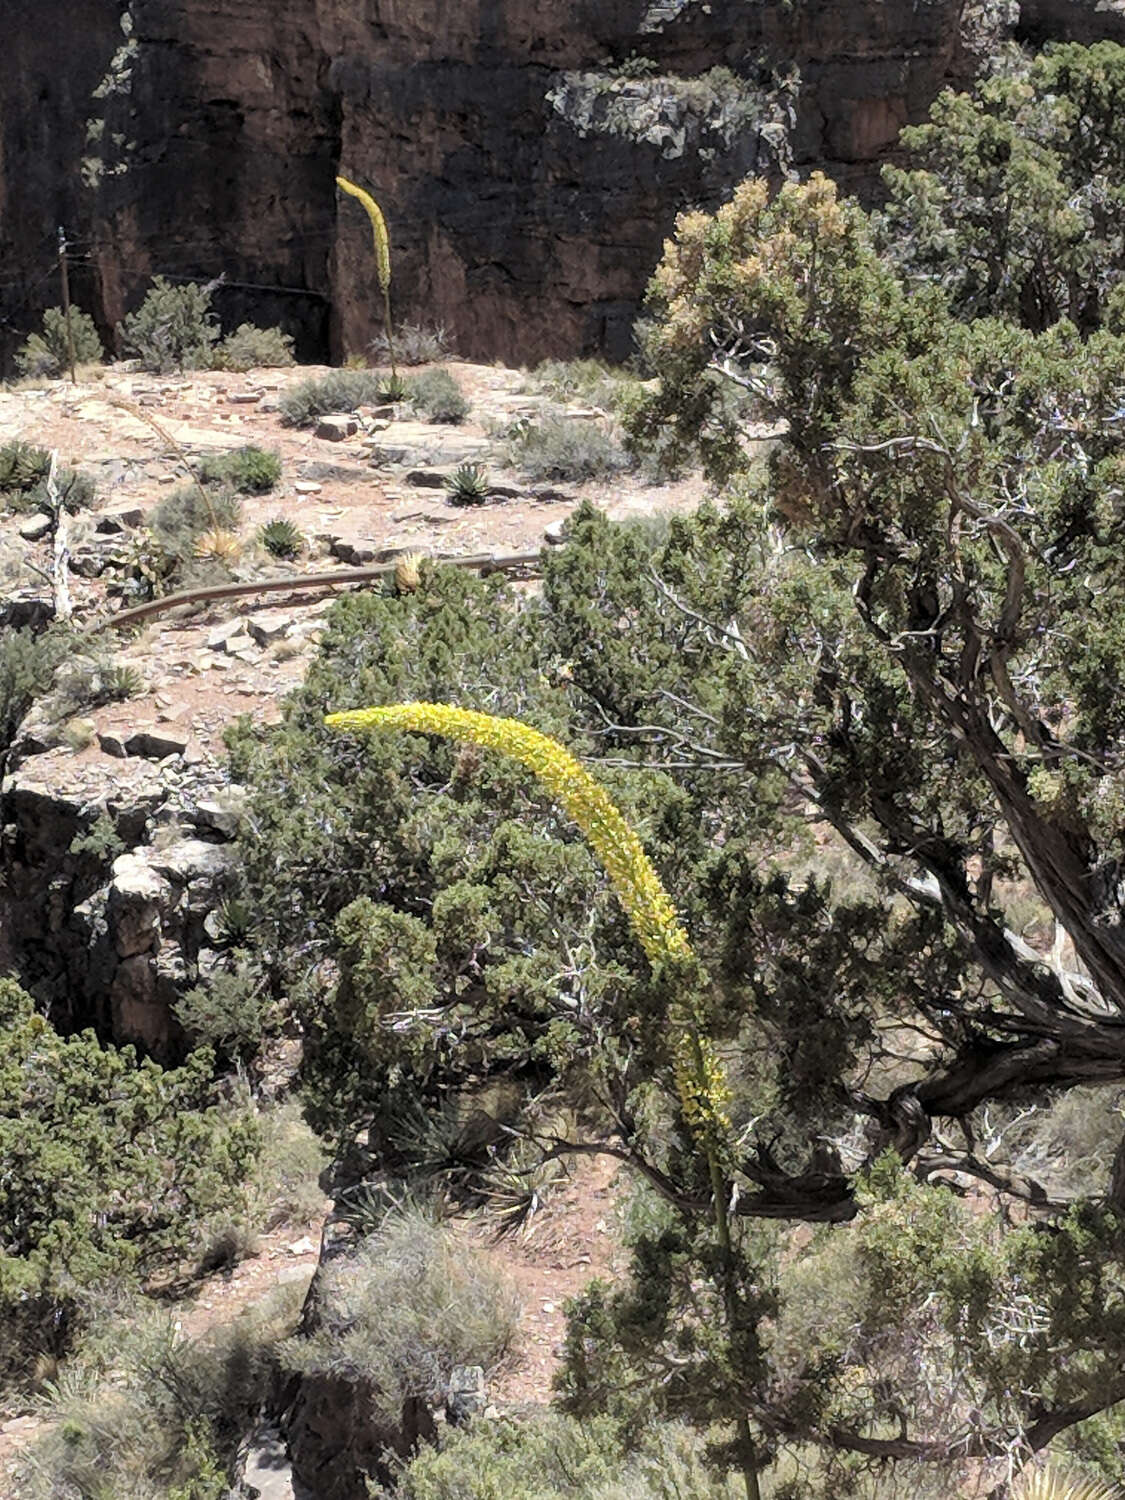 Image of Utah agave